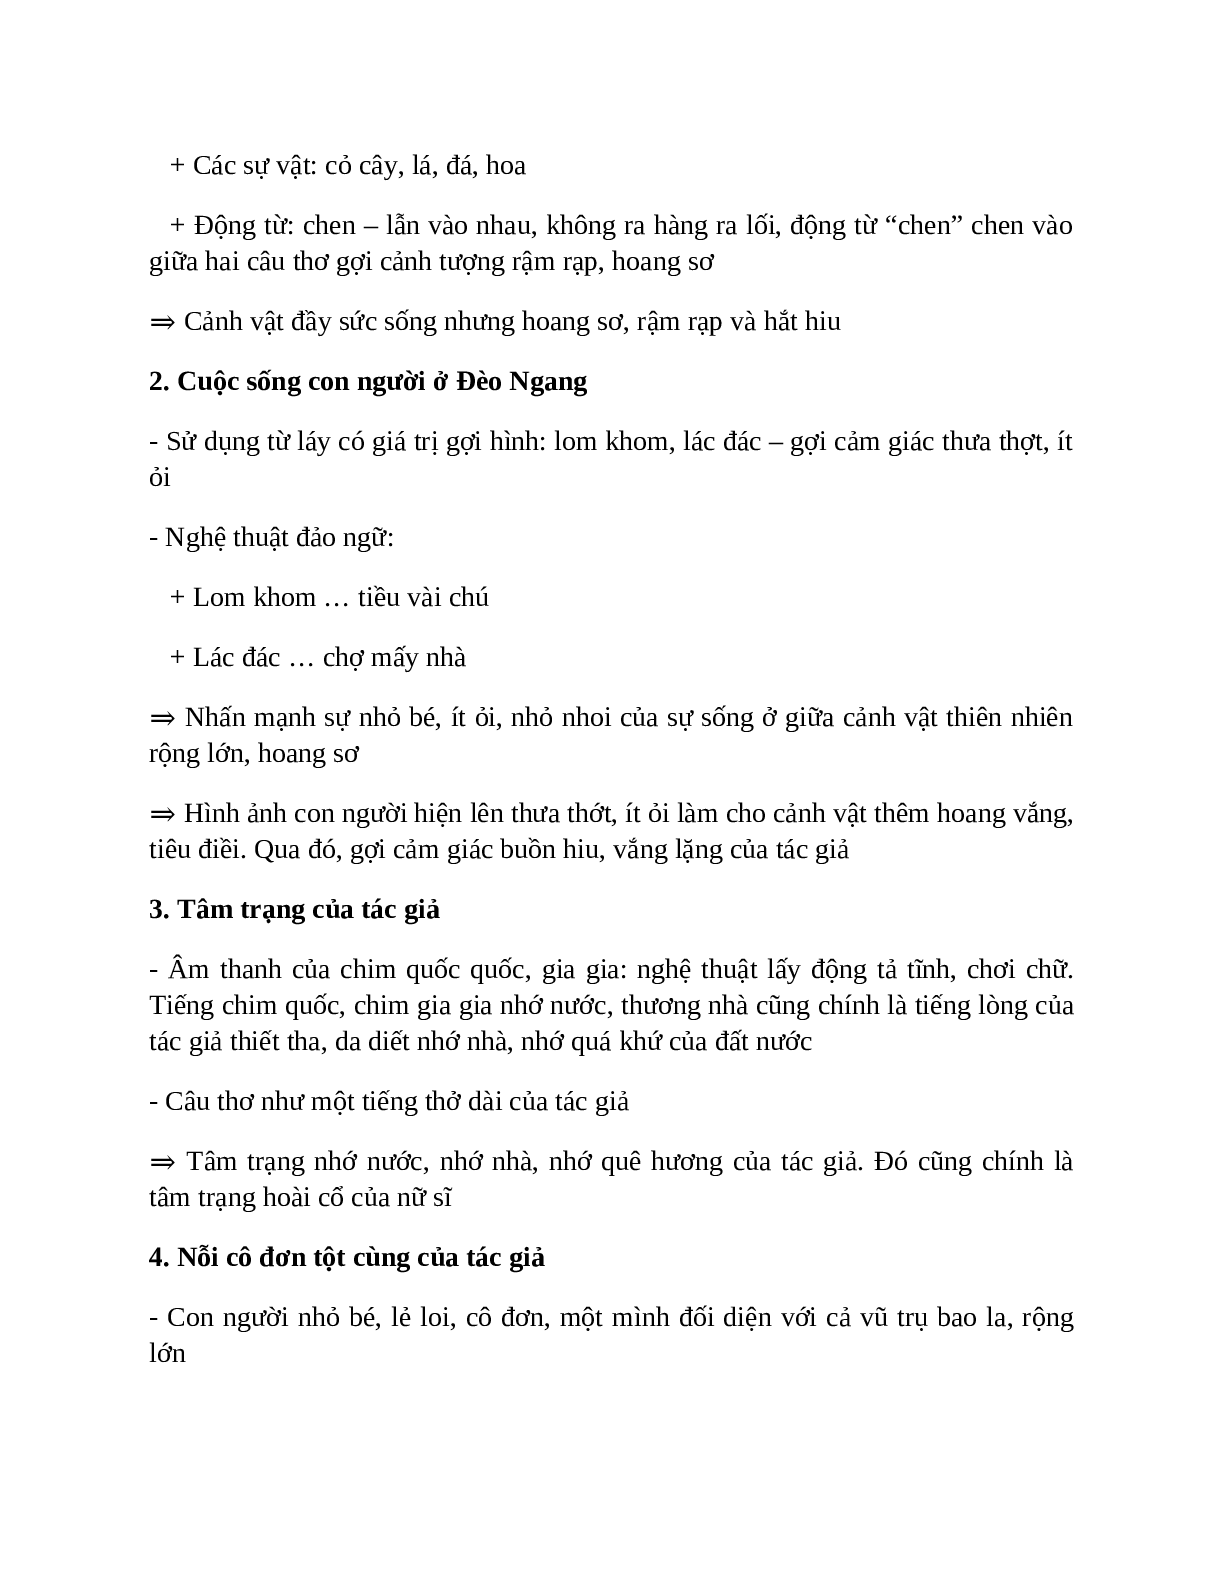 Qua đèo Ngang – nội dung, dàn ý phân tích, bố cục, tóm tắt (trang 3)